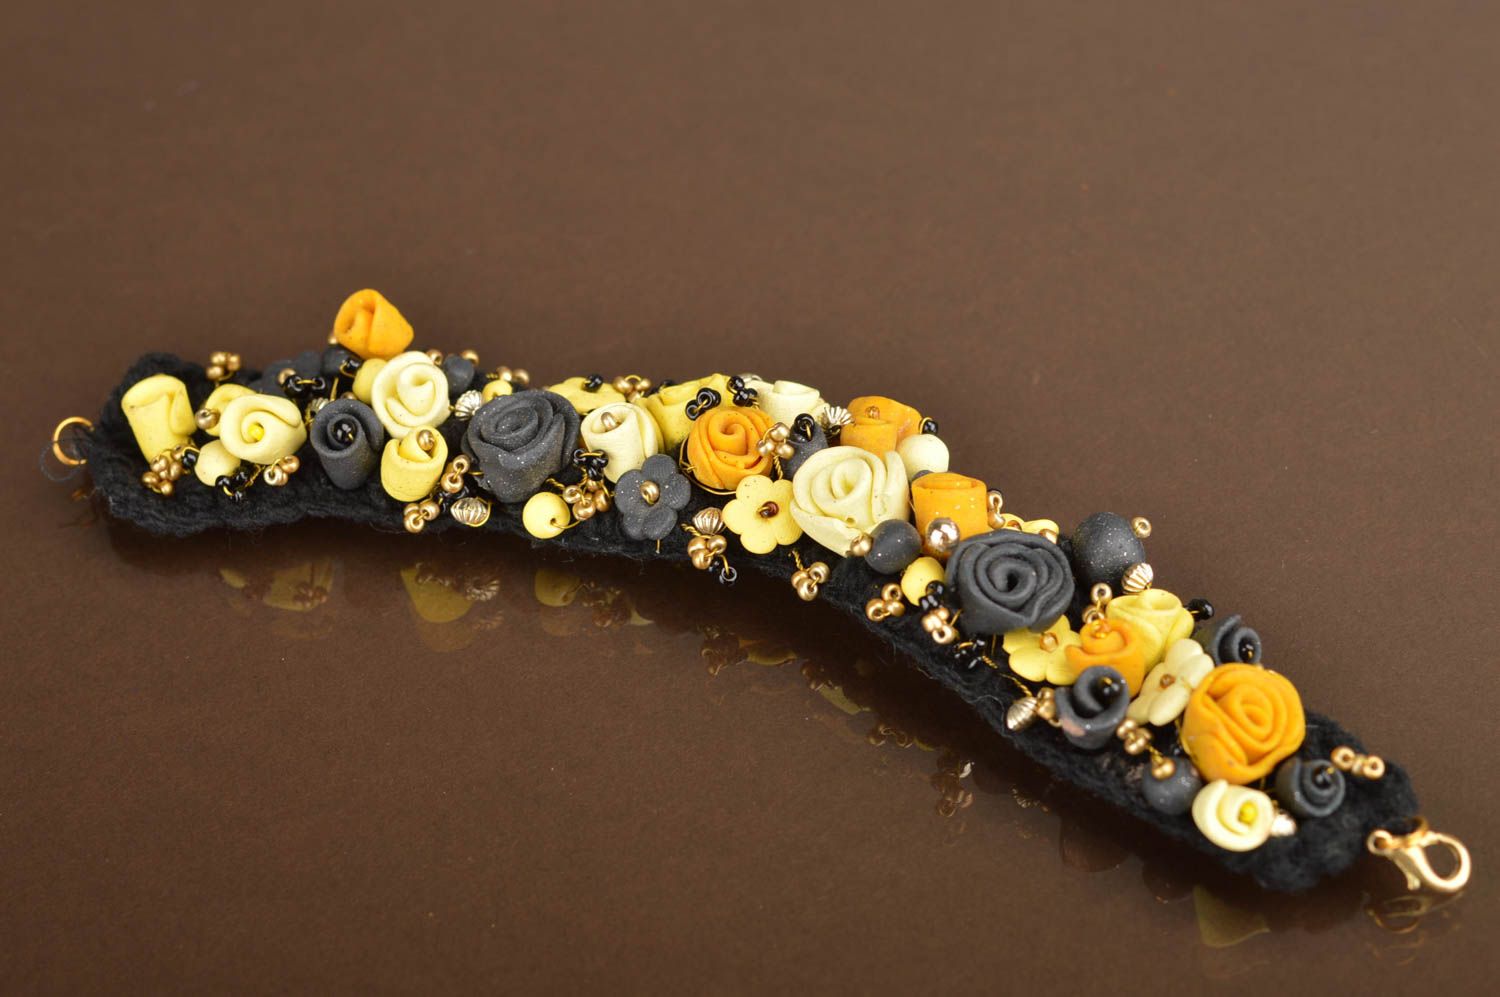 Наручный браслет с цветами из полимерной глины на вязаной основе хенд мейд фото 2